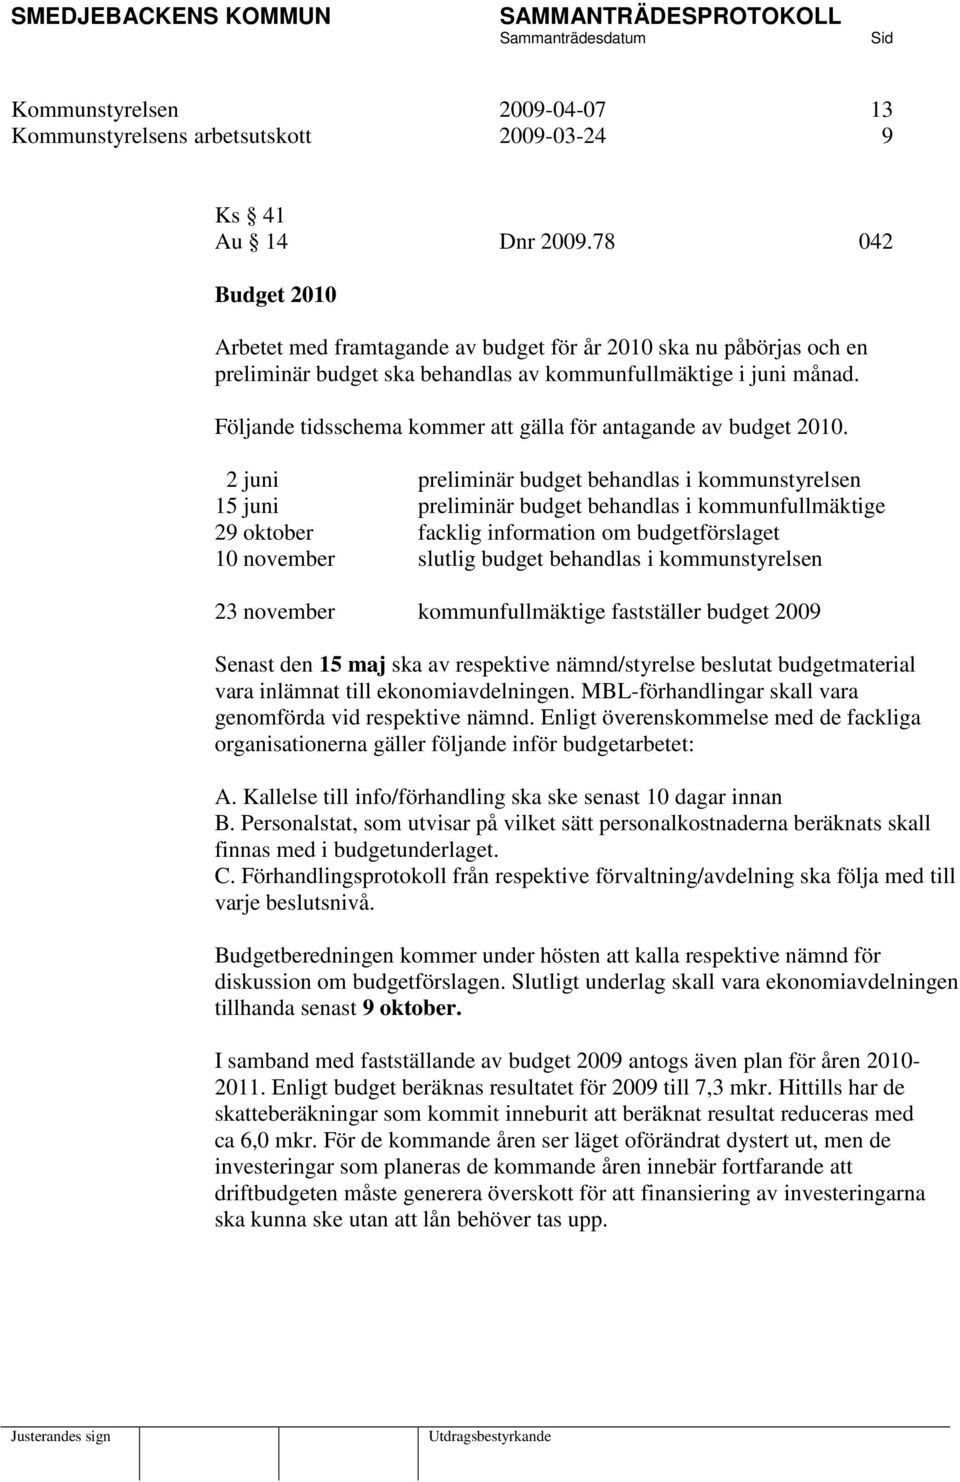 Följande tidsschema kommer att gälla för antagande av budget 2010.